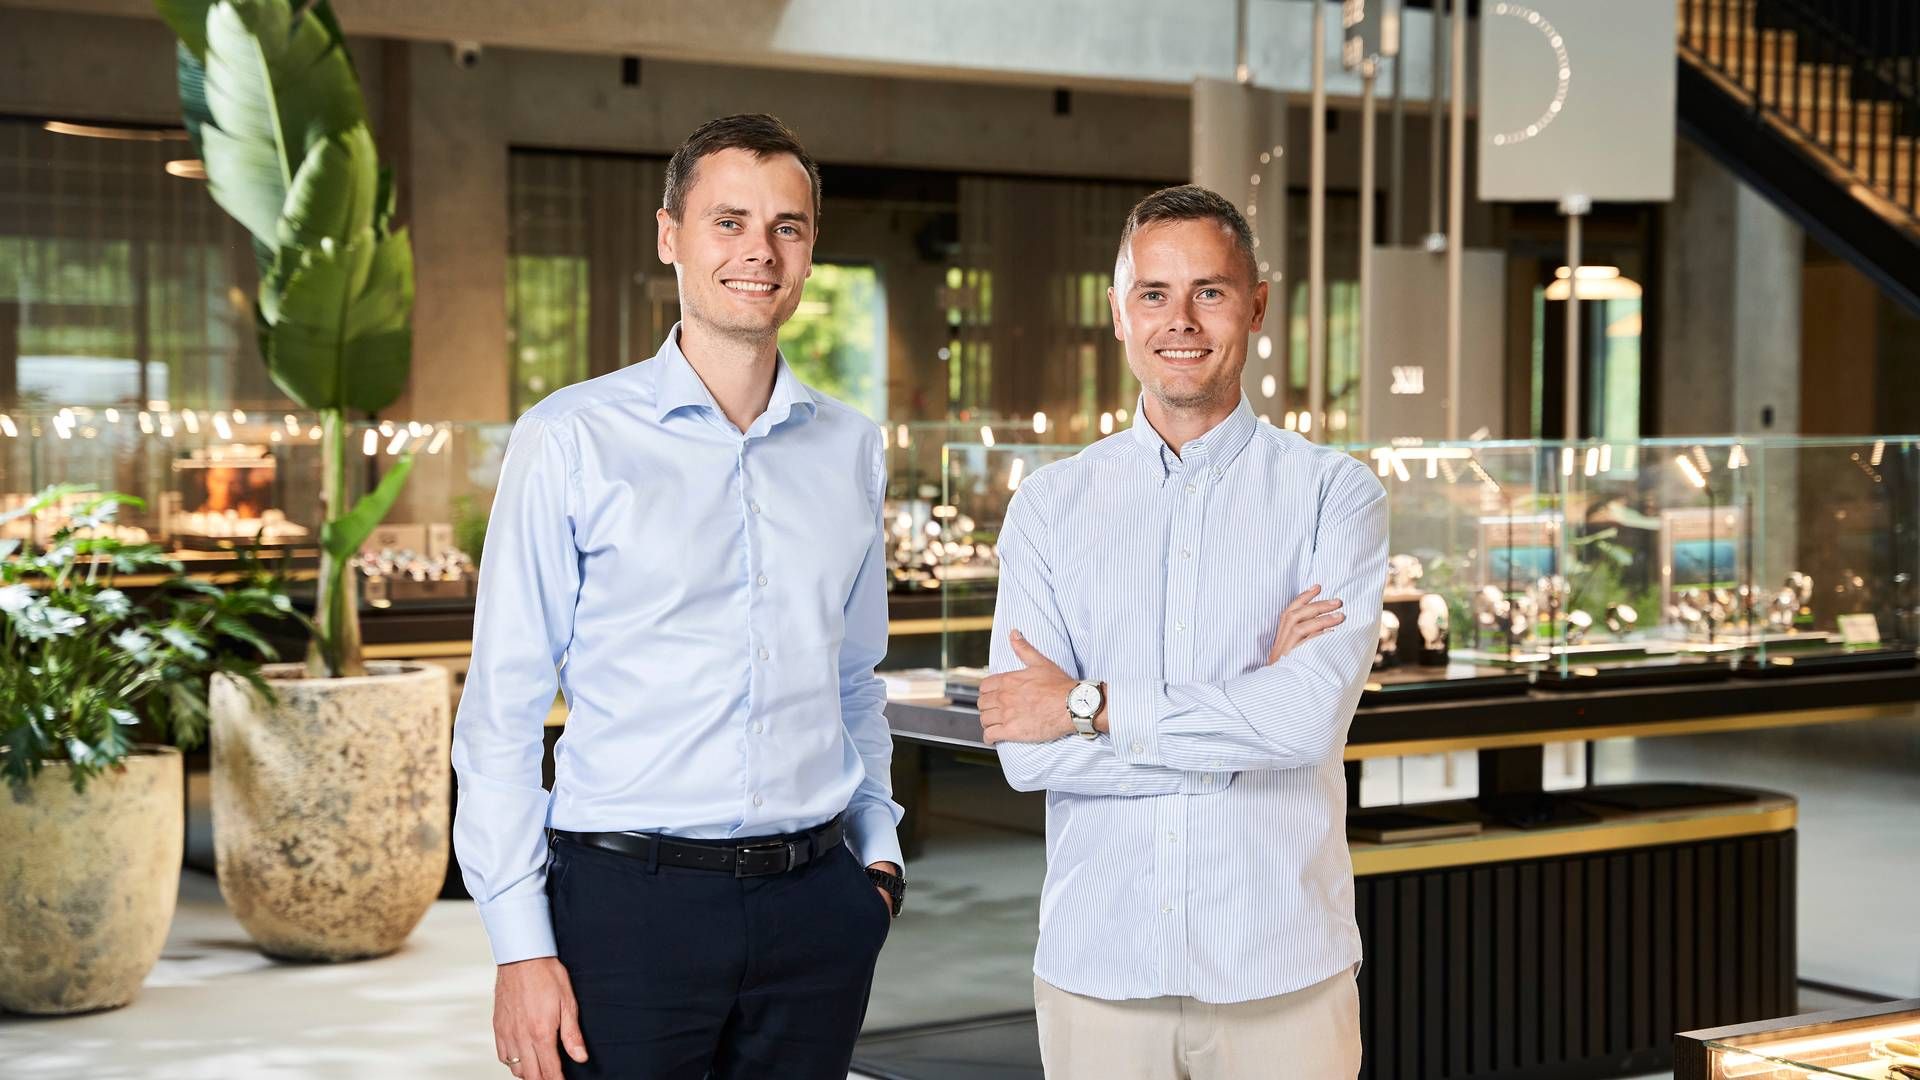 Tvillingerne Kasper og Mikkel Dissing står sammen i spidsen for Ditur, som har fuld gang i væksten i Skandinavien og Tyskland. | Foto: Ditur/pr